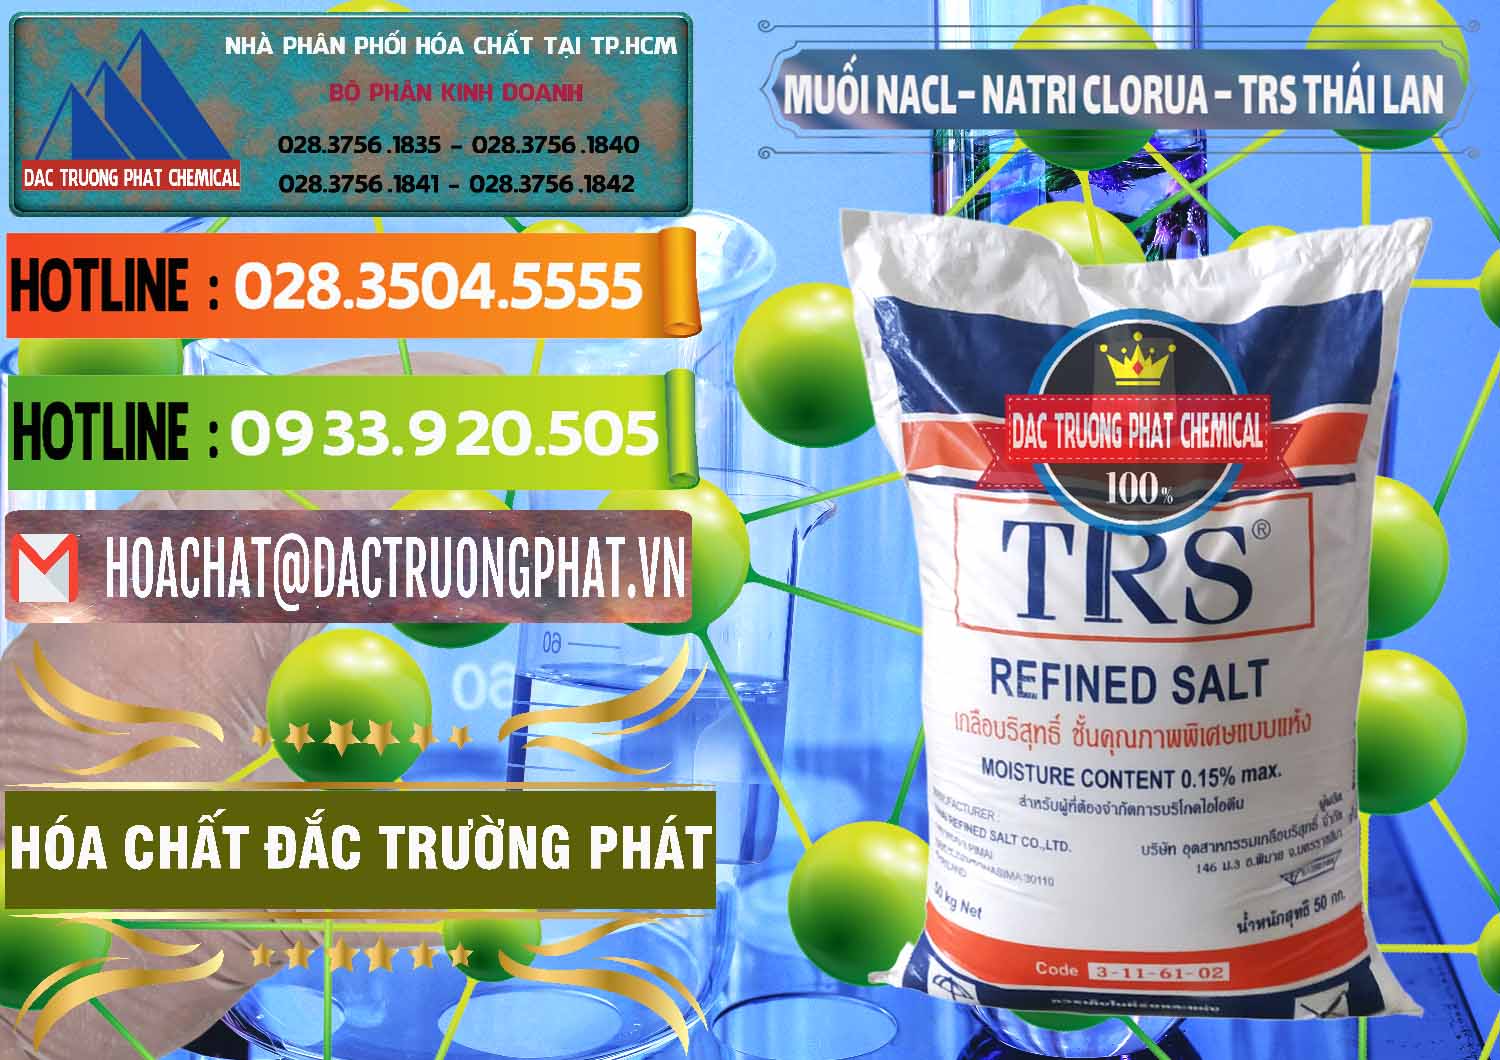 Cty chuyên cung ứng _ bán Muối NaCL – Sodium Chloride TRS Thái Lan - 0096 - Nơi phân phối & kinh doanh hóa chất tại TP.HCM - cungcaphoachat.com.vn